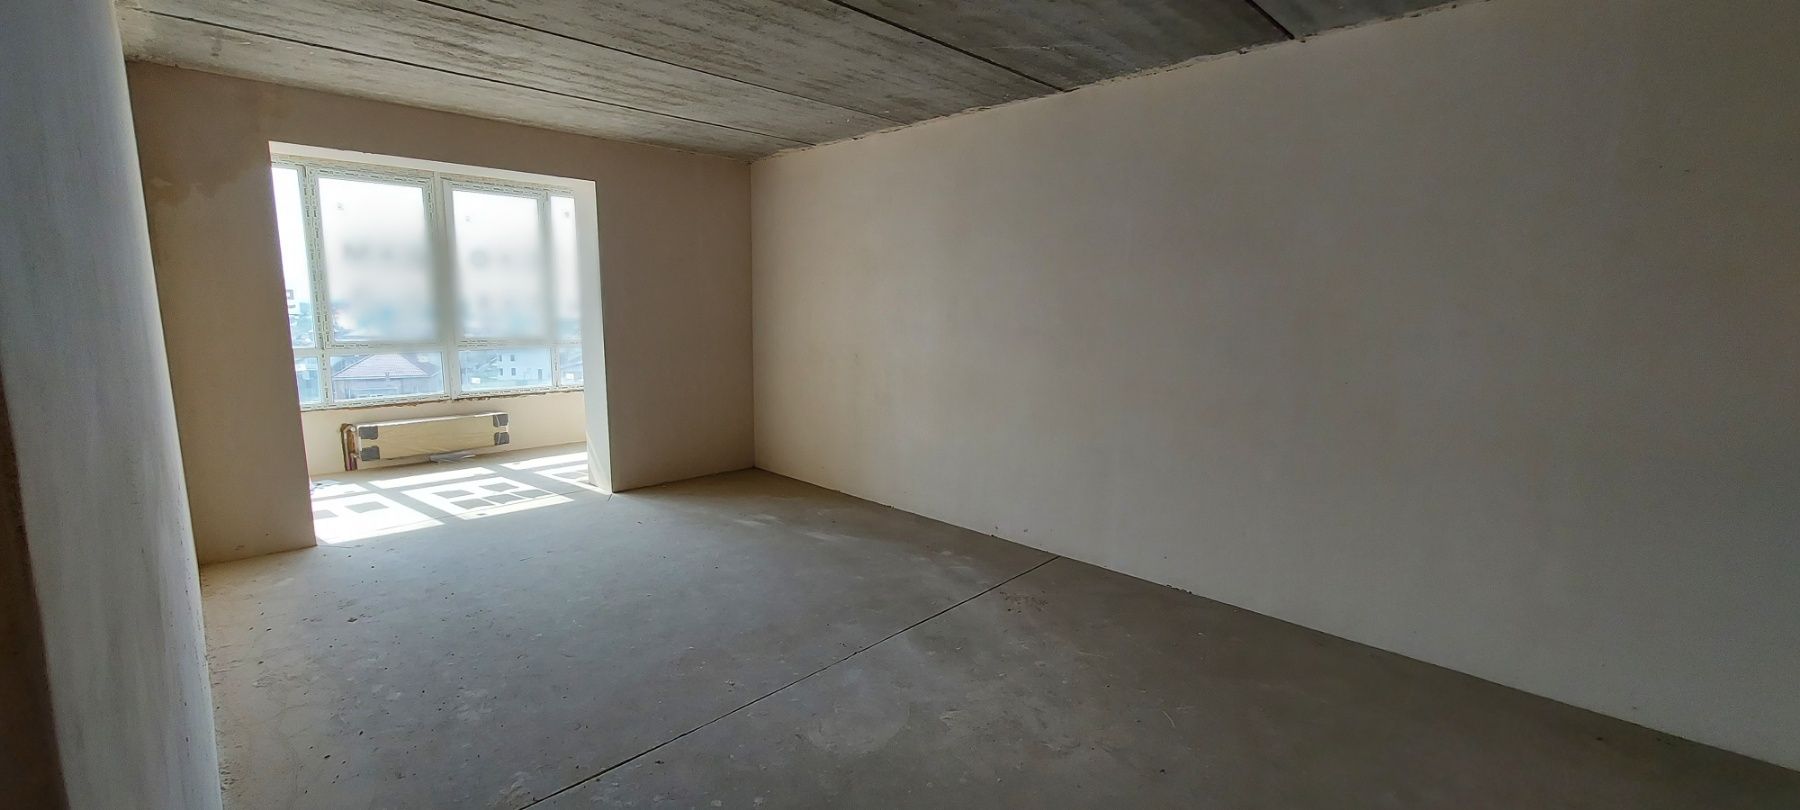 В продаже 2-х комнатная квартира в ЖК Ривьера Сити с видом на море ID 49444 (Фото 13)